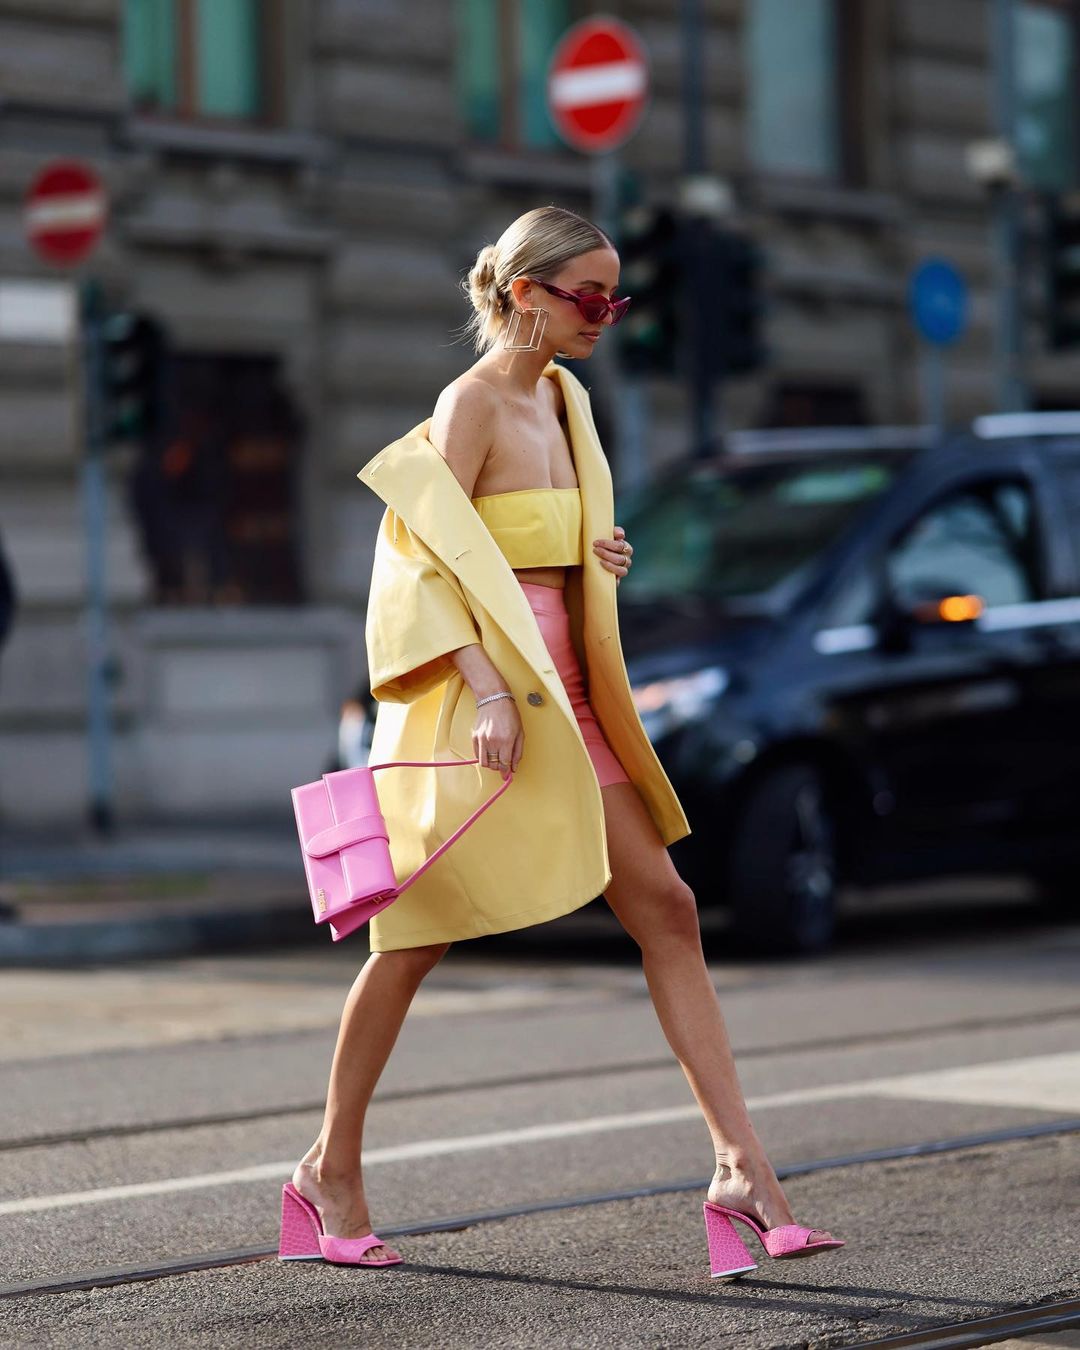 thời trang xuống phố với màu vàng và hồng